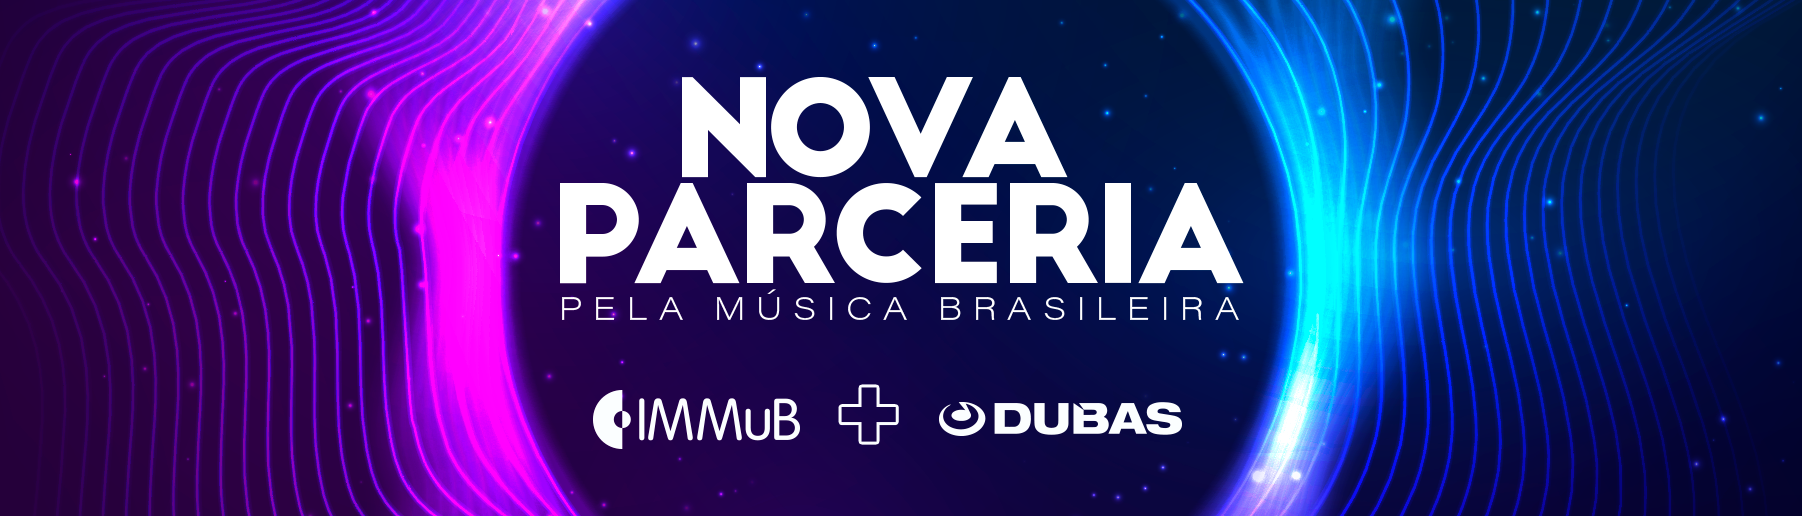 IMMuB e Dubas: nova parceria pela música brasileira